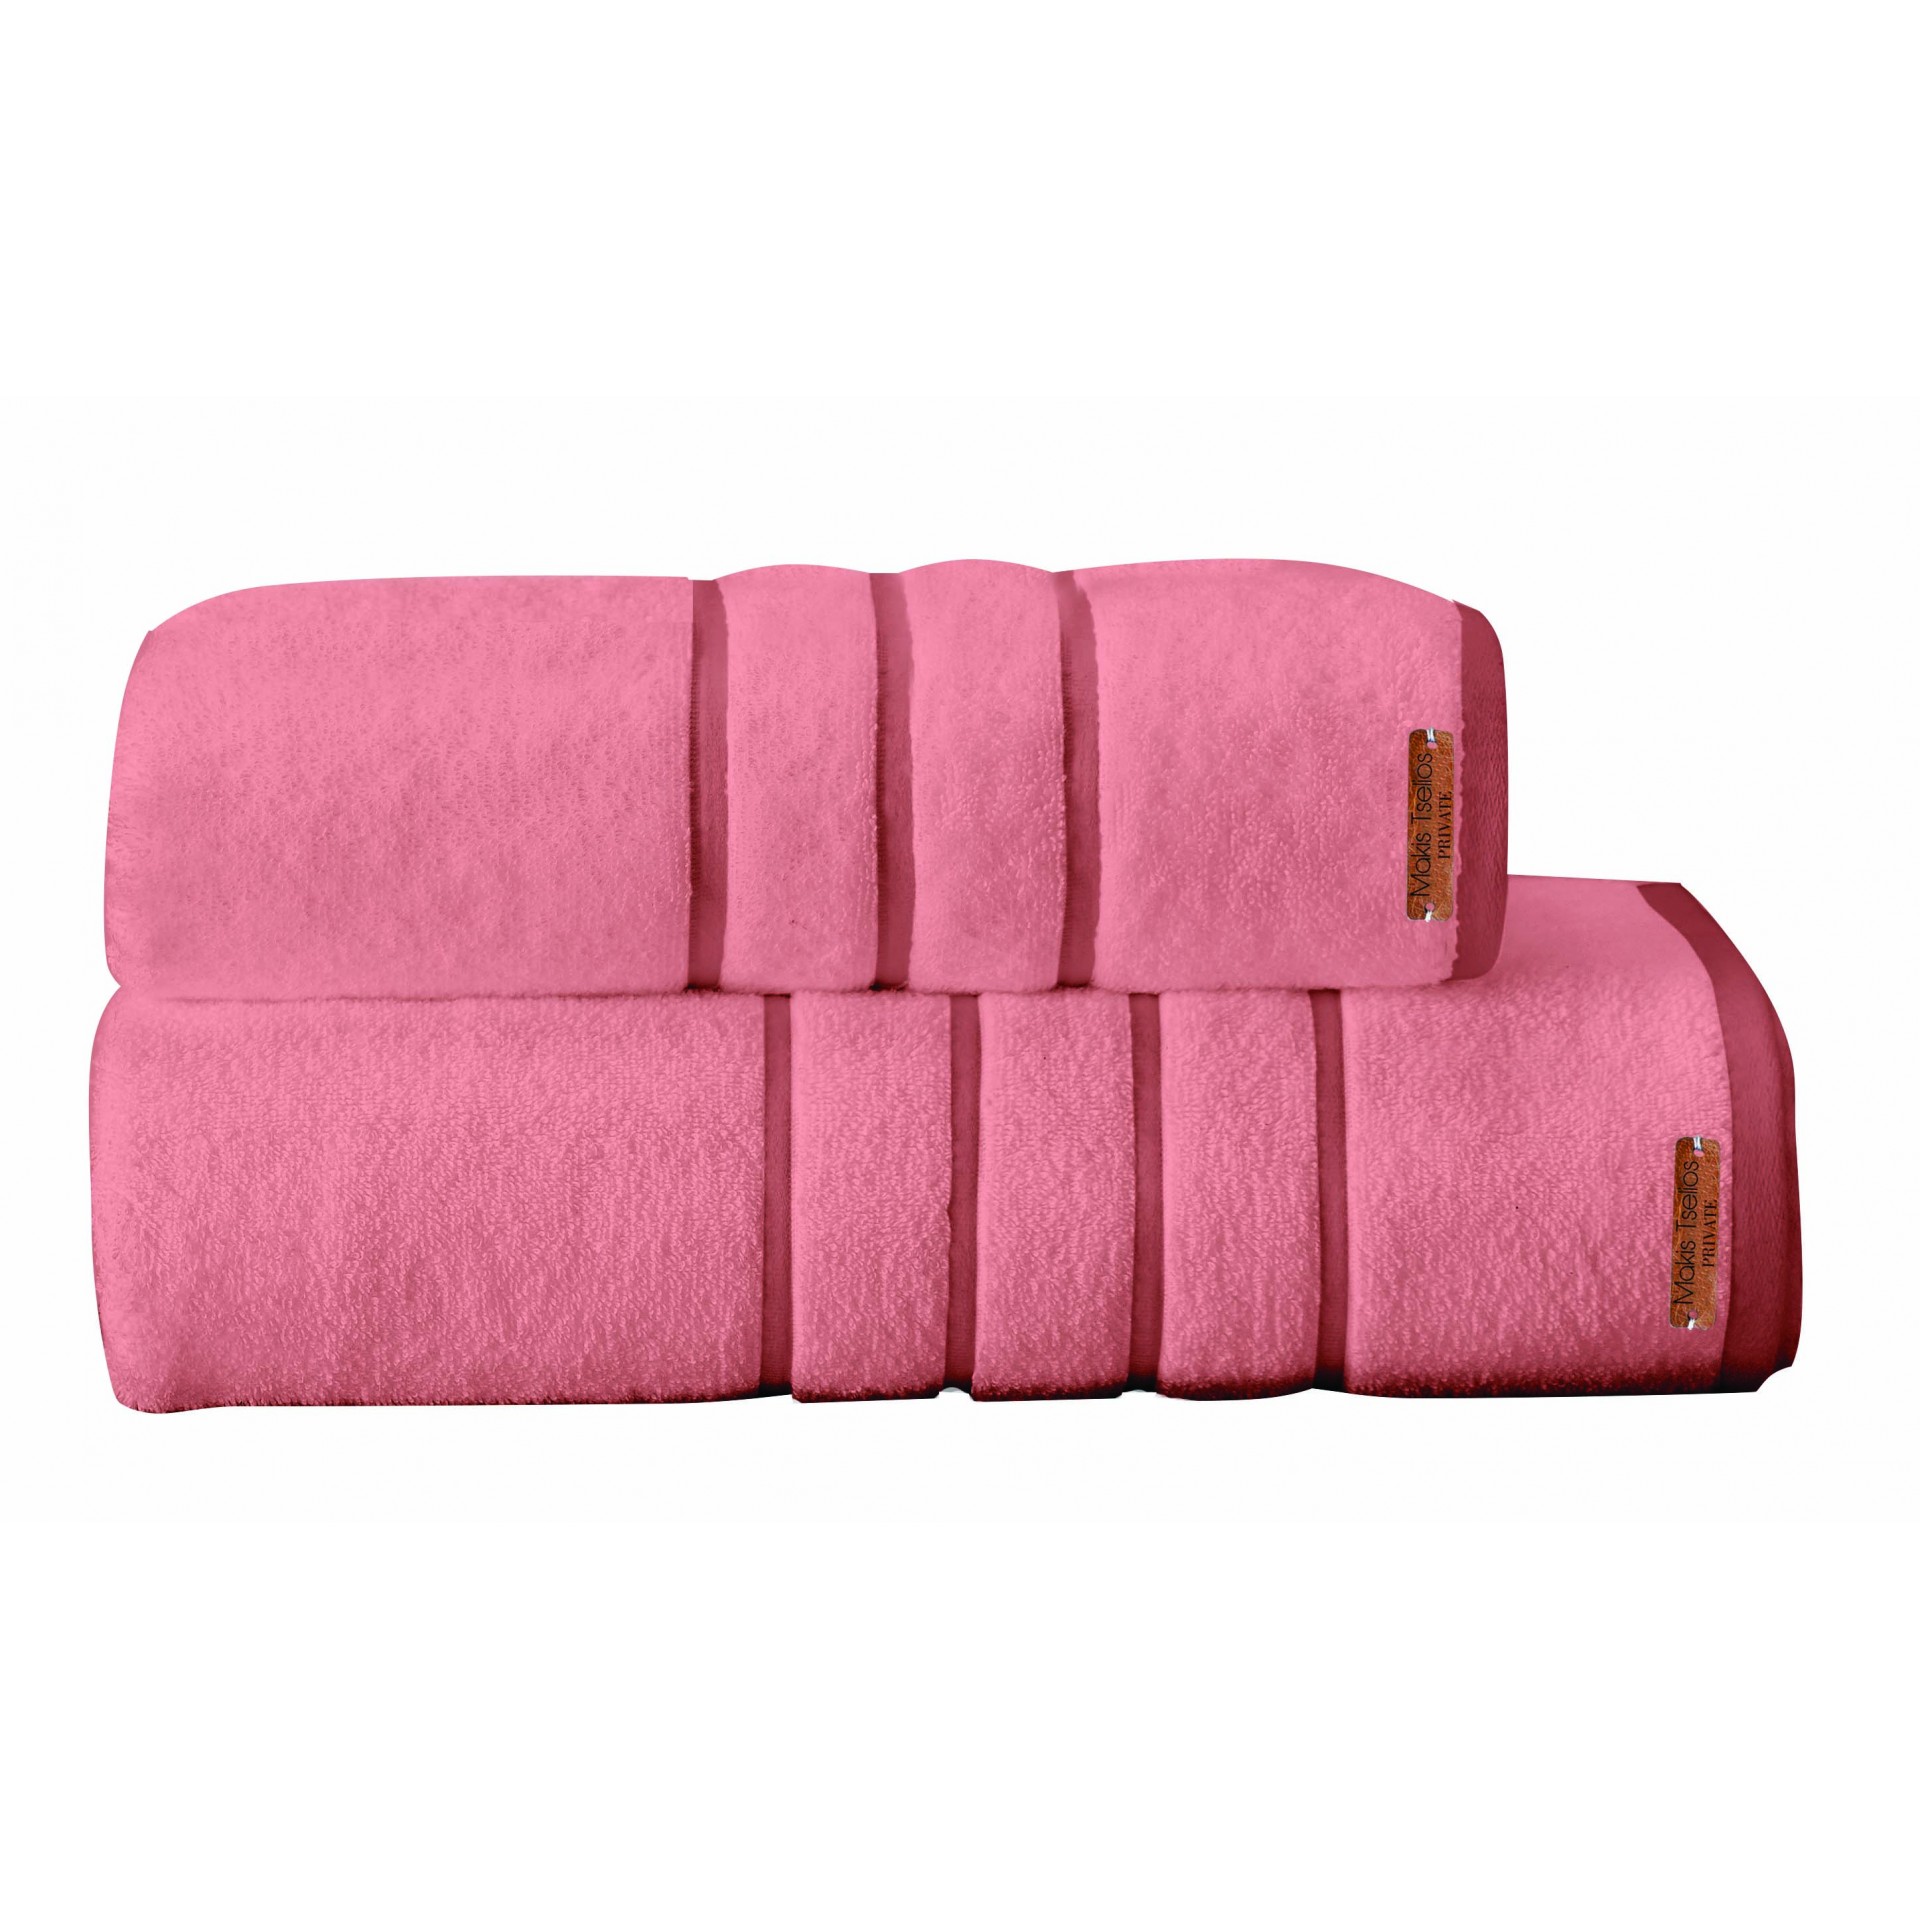 Πετσέτα Προσώπου Μεμονωμένη Βαμβακερή 50x90εκ. Prive Powder Pink Makis Tselios (Ύφασμα: Βαμβάκι 100%, Χρώμα: Ροζ) - Makis Tselios - 290310123456 149234